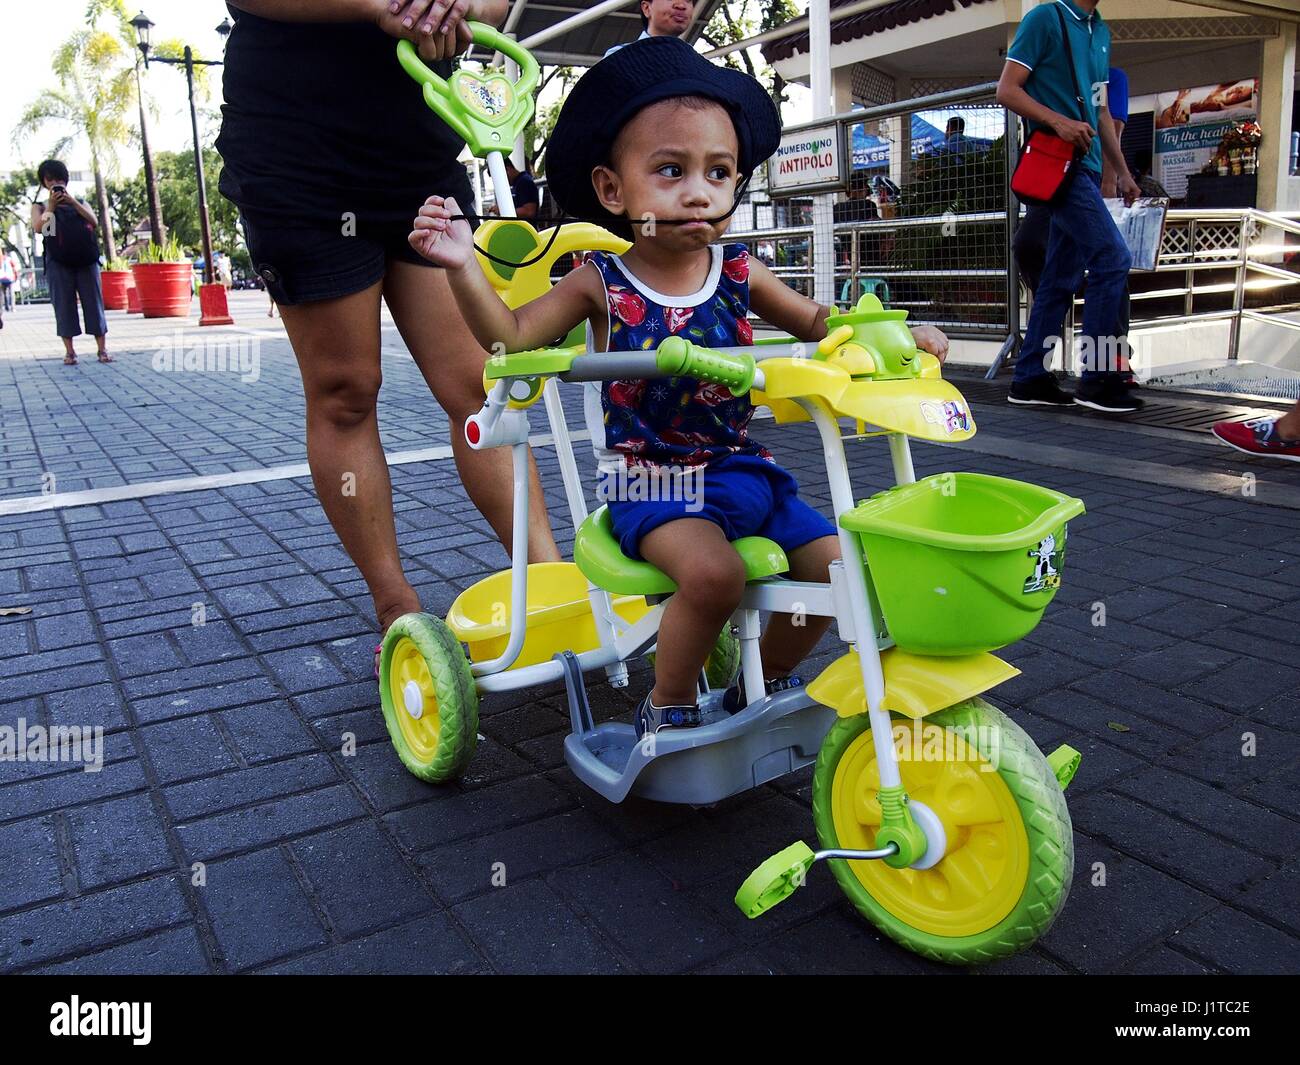 ANTIPOLO CITY, Filipinas - Abril 18, 2017: un joven es empujada por su madre en su colorido kiddie triciclo. Foto de stock